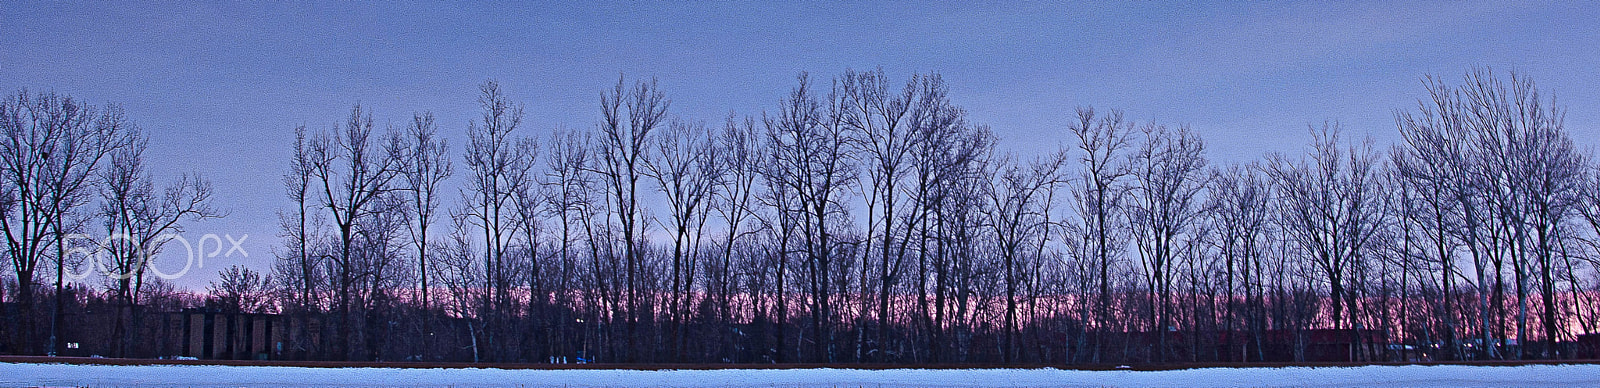 AF Zoom-Nikkor 28-80mm f/3.5-5.6D sample photo. Winter tree line photography